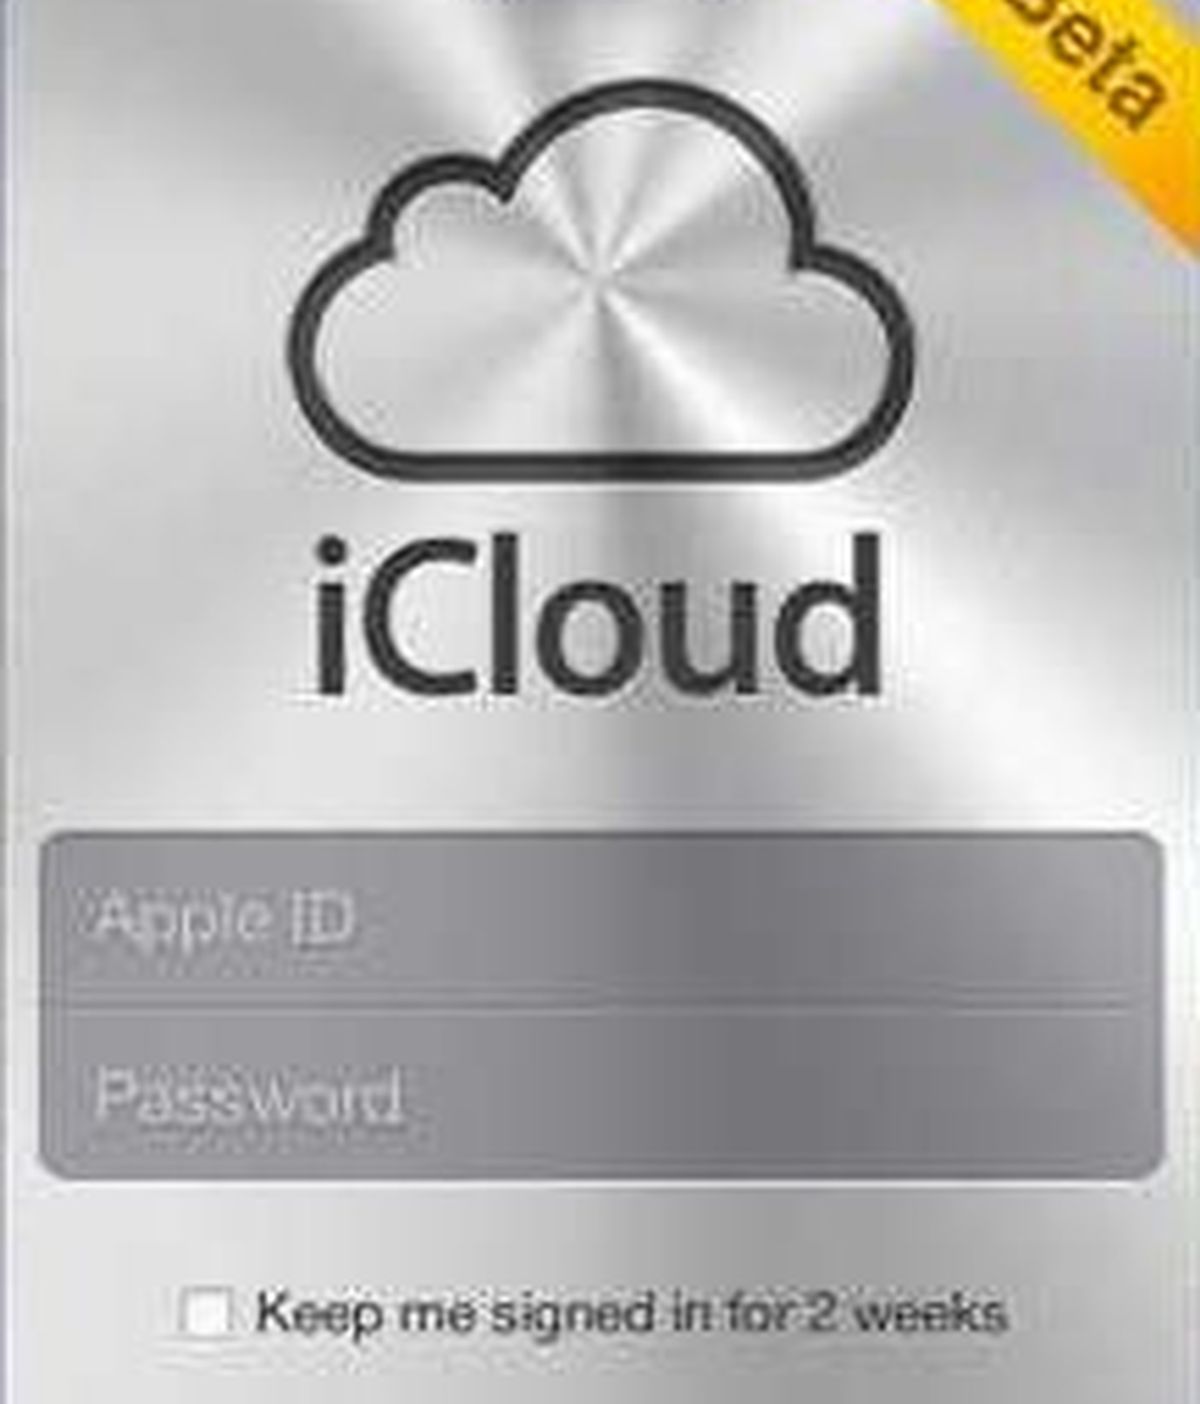 Apple ha anunciado que el 12 de octubre estará disponible iCloud, un paquete de servicios en la nube que integra, entre otros, iTunes en la nube, fotos en 'streaming' y documentos.